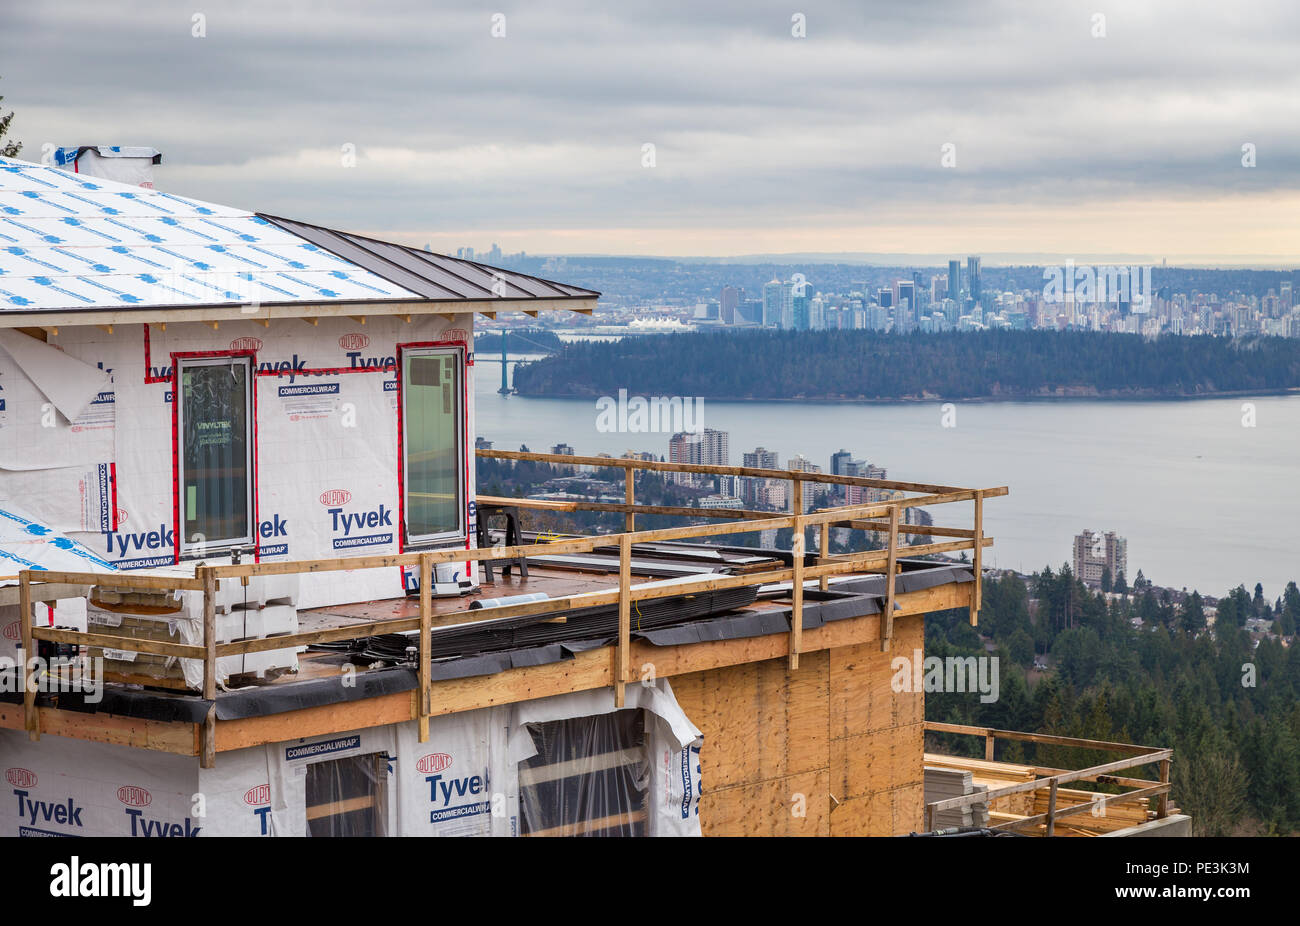 WEST Vancouver, BC, Canada - Feb 10, 2016: Nuova casa costruita in West Vancouver proprietà britannica. Il settore continua a vedere un ondata di investimenti provenienti dal mercato cinese. Foto Stock